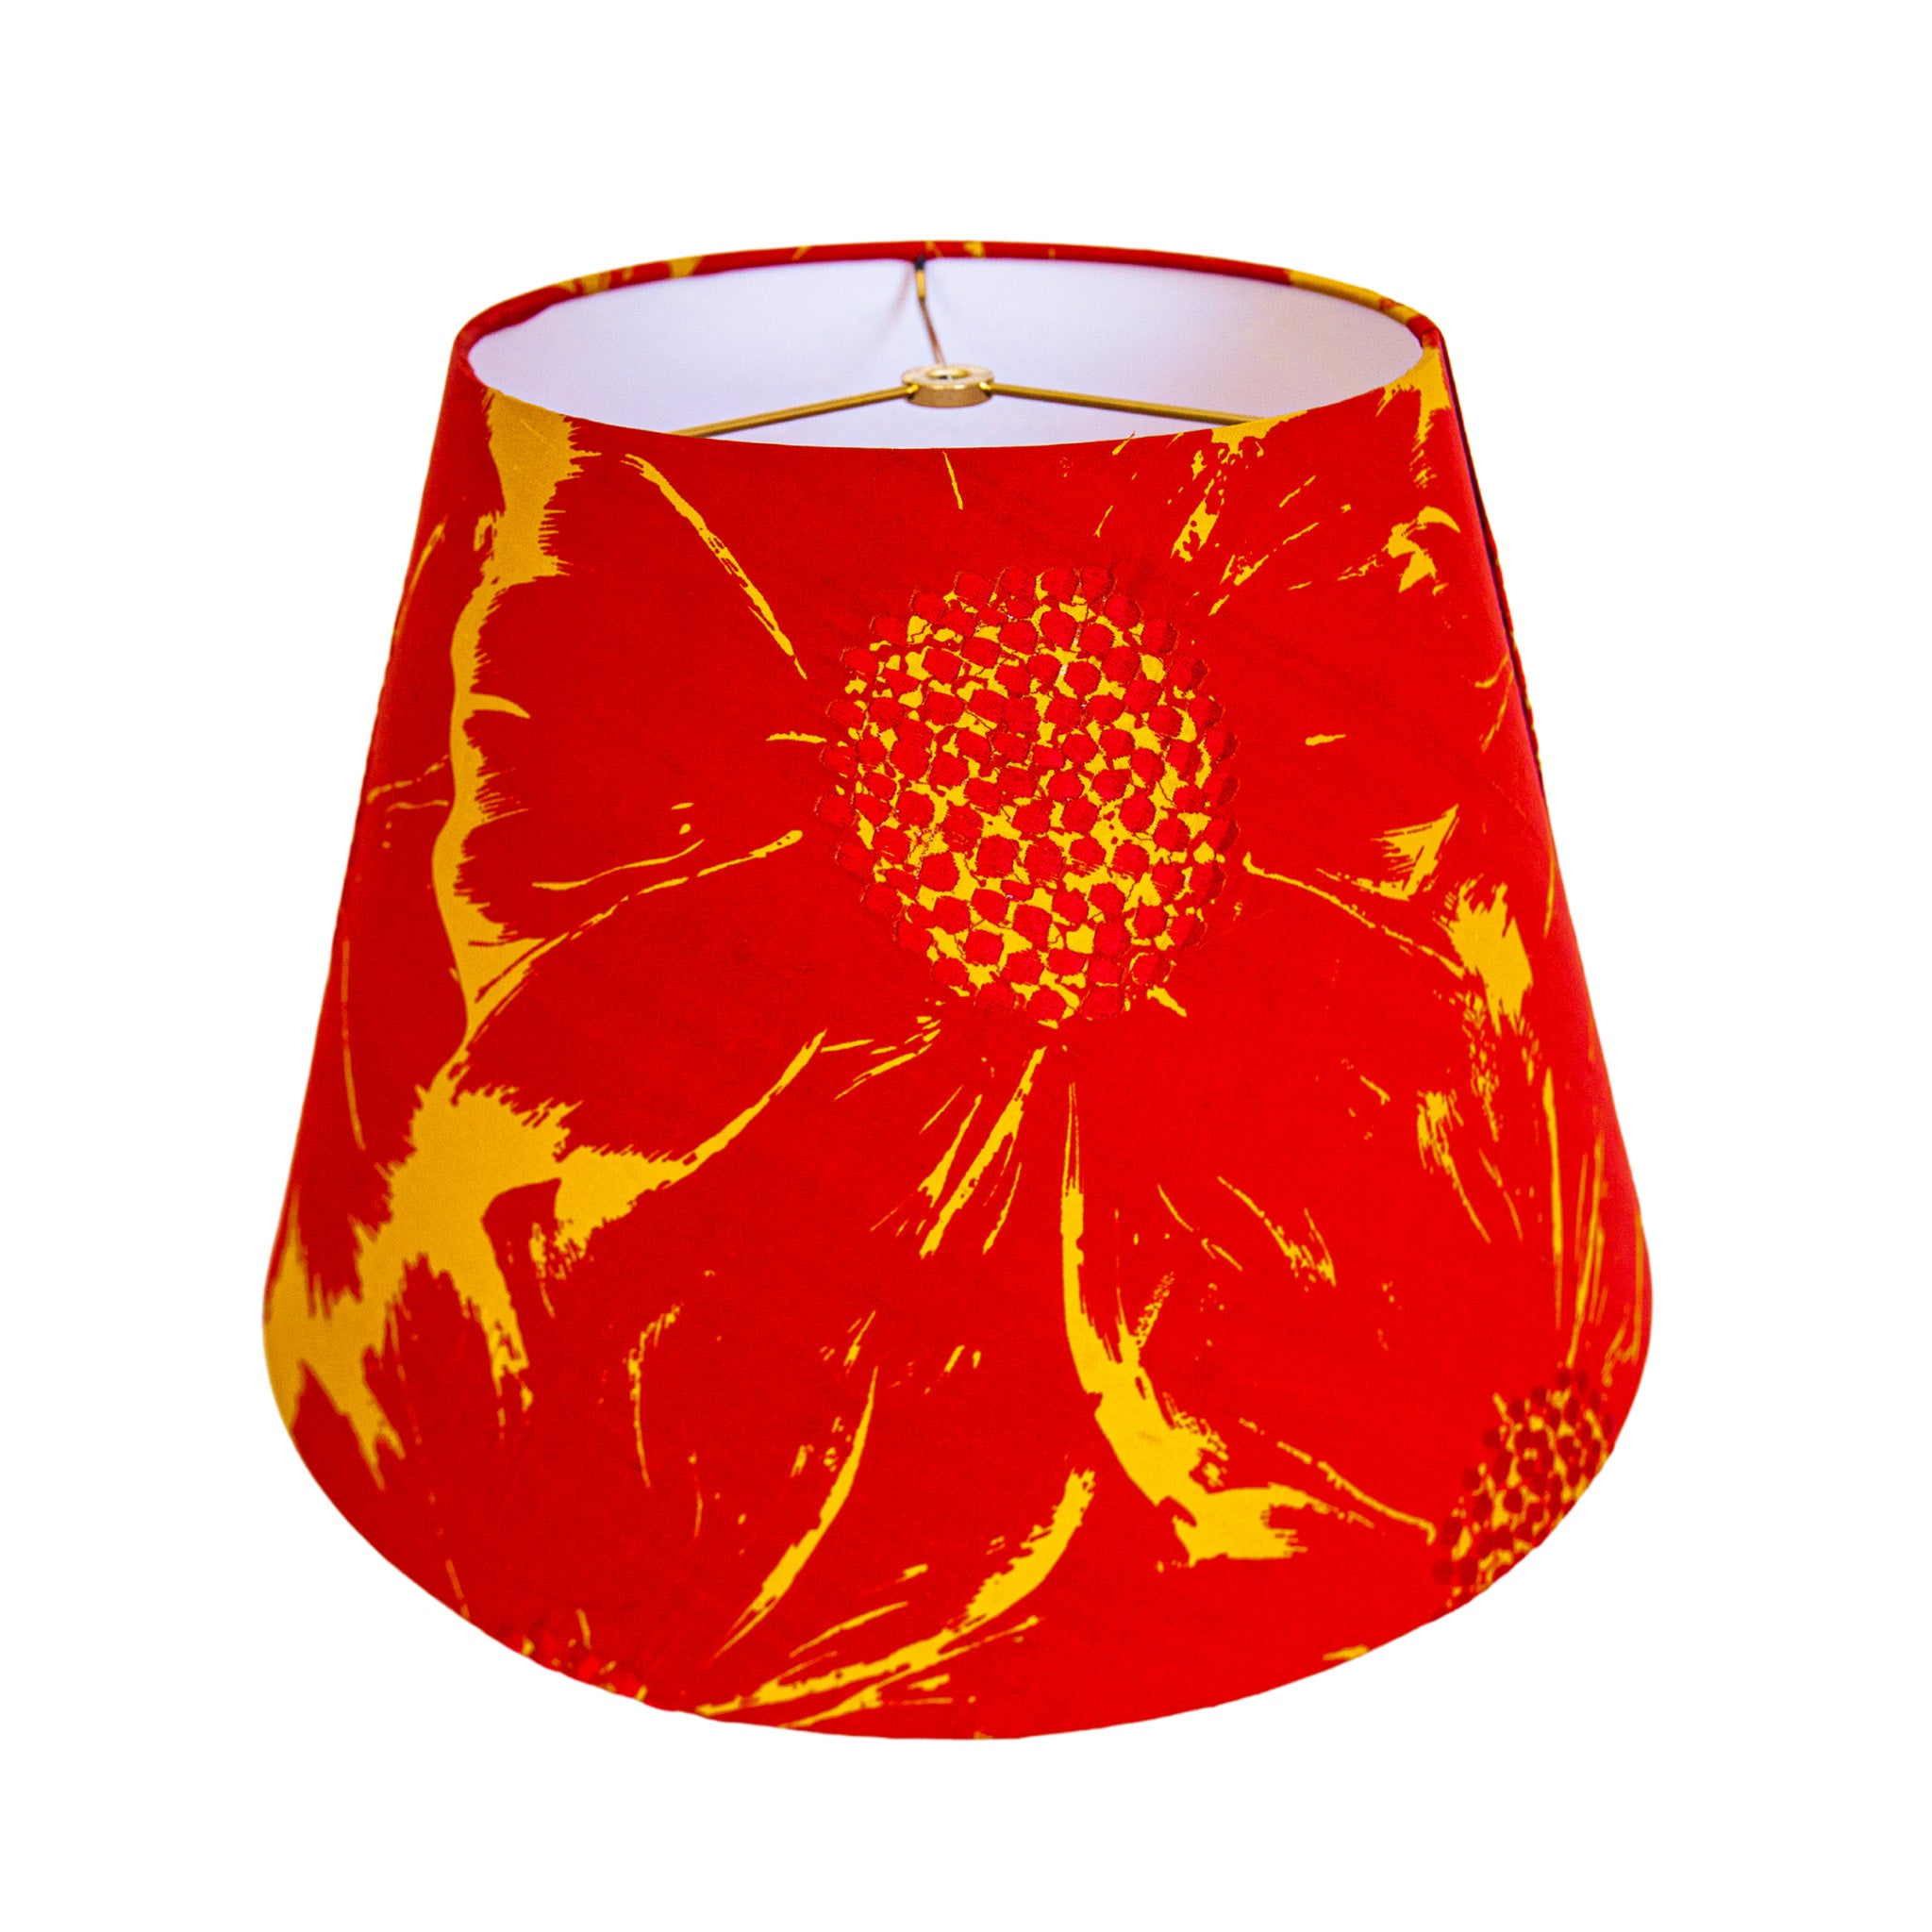 Lisa / Red Yellow Abstract Tropical Print Empire Lamp Shade